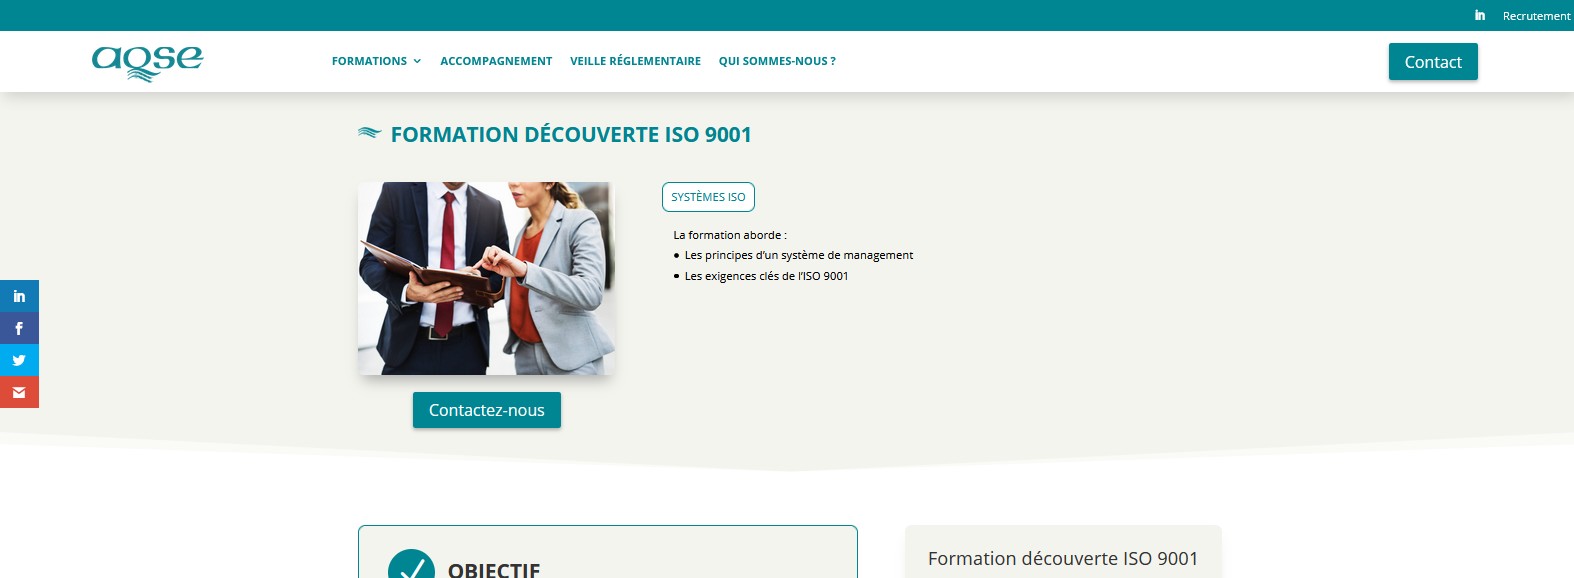 Formation ISO 9001 découverte en intra